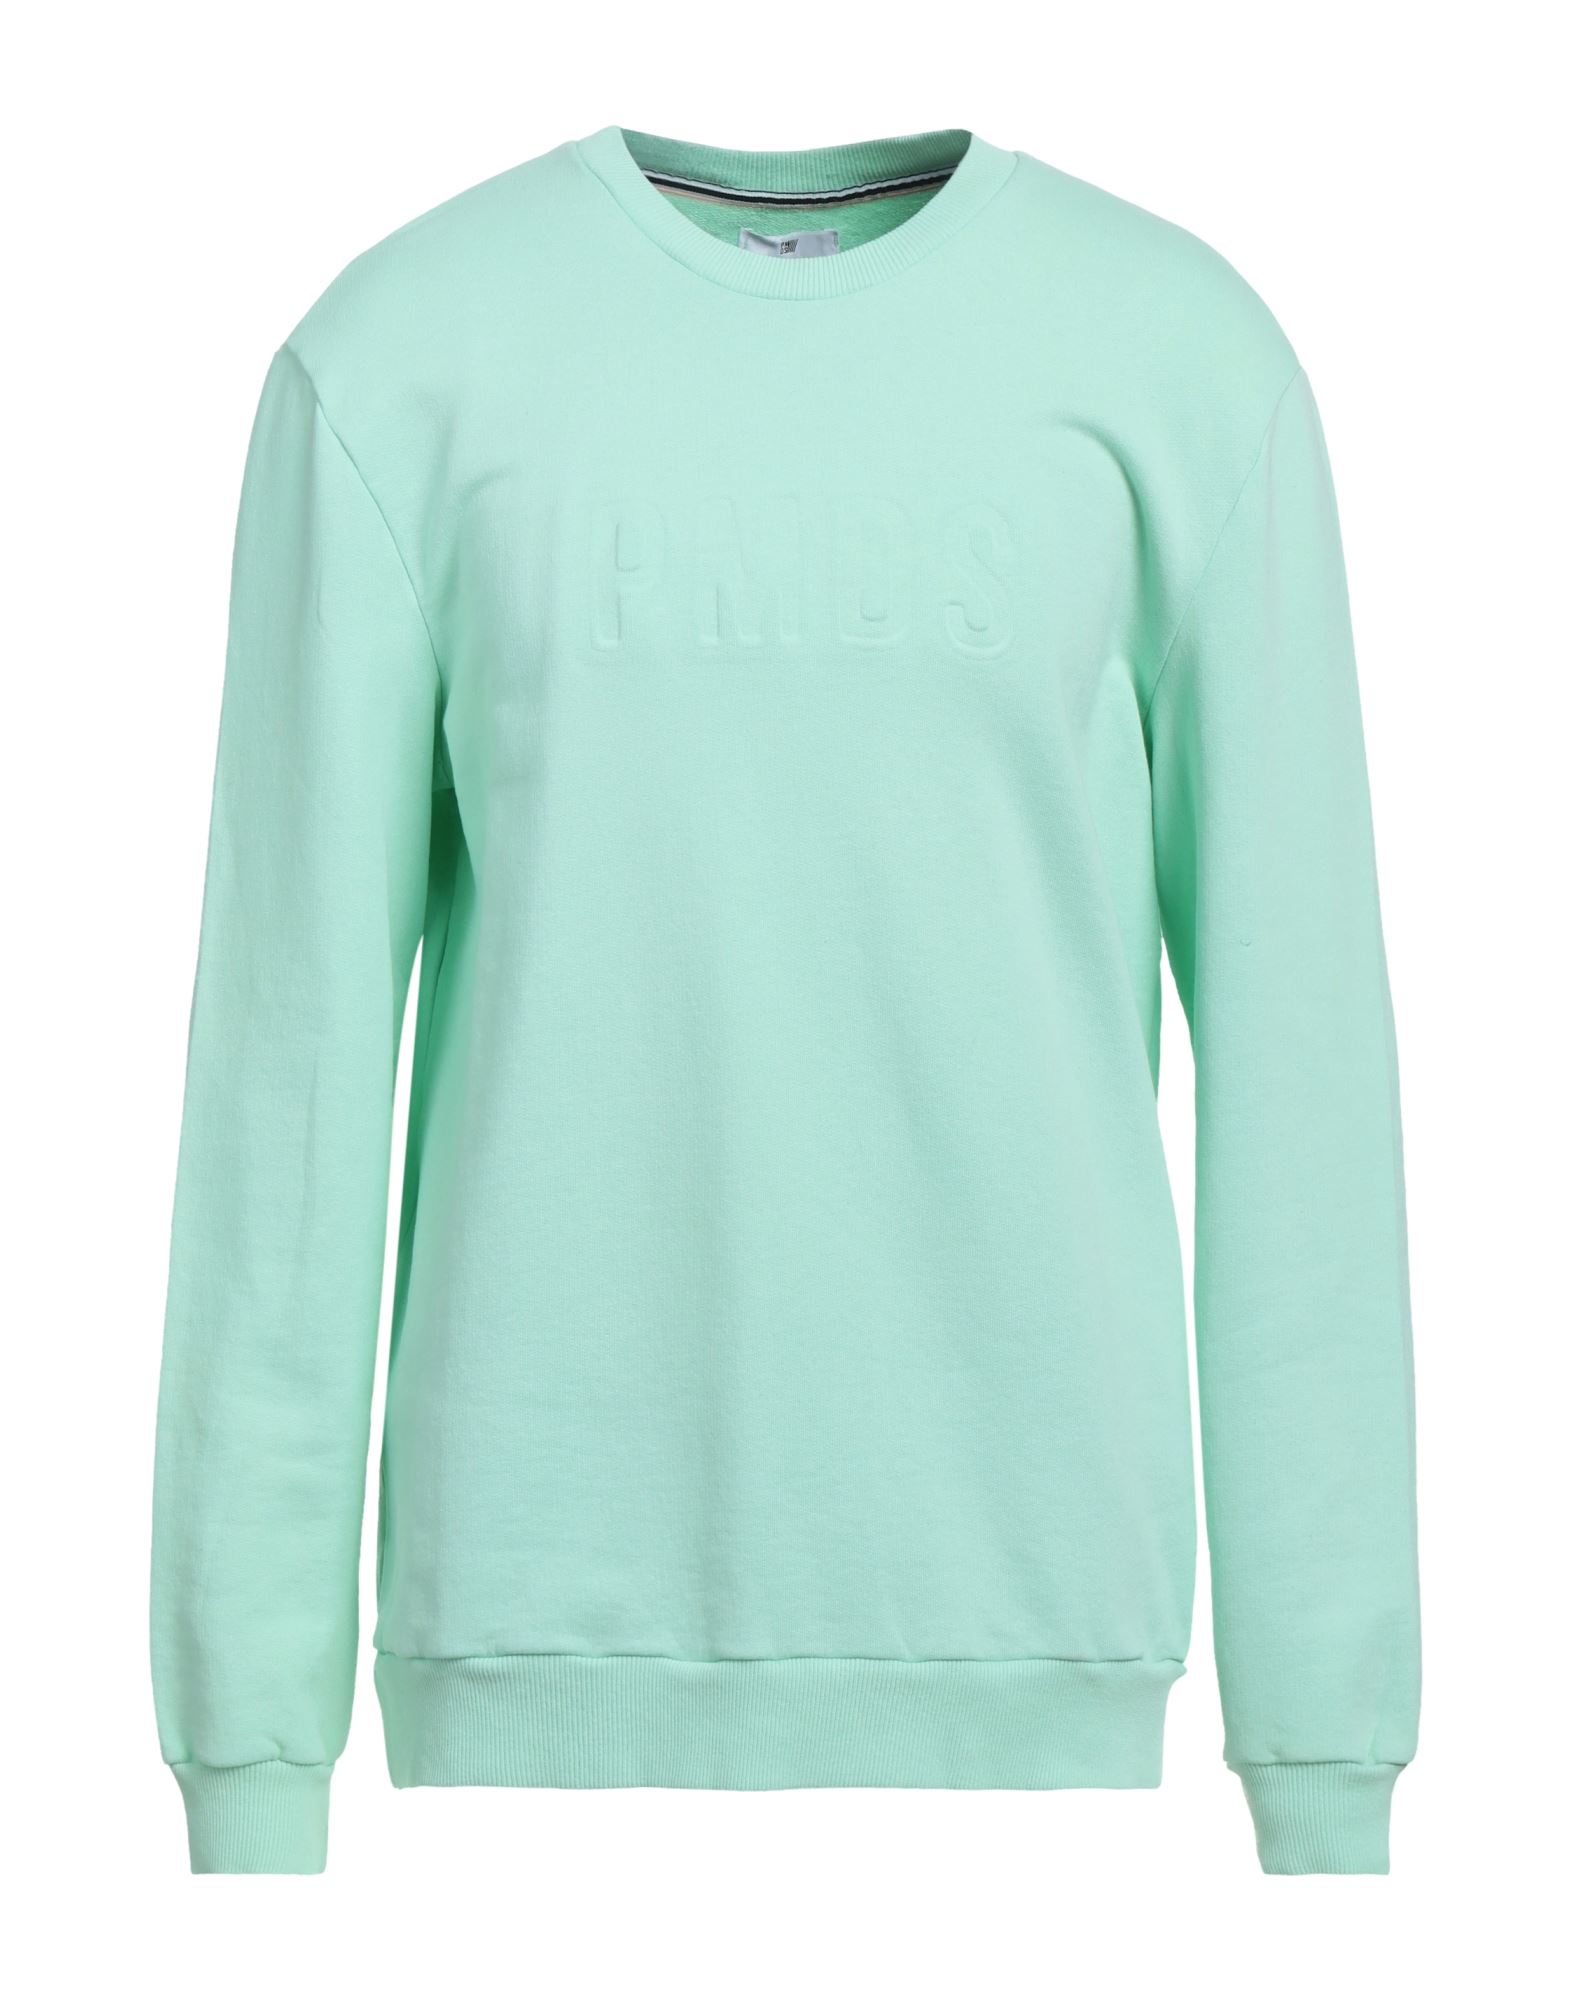 Shop Pmds Premium Mood Denim Superior Man Sweatshirt Light Green Size Xl Cotton